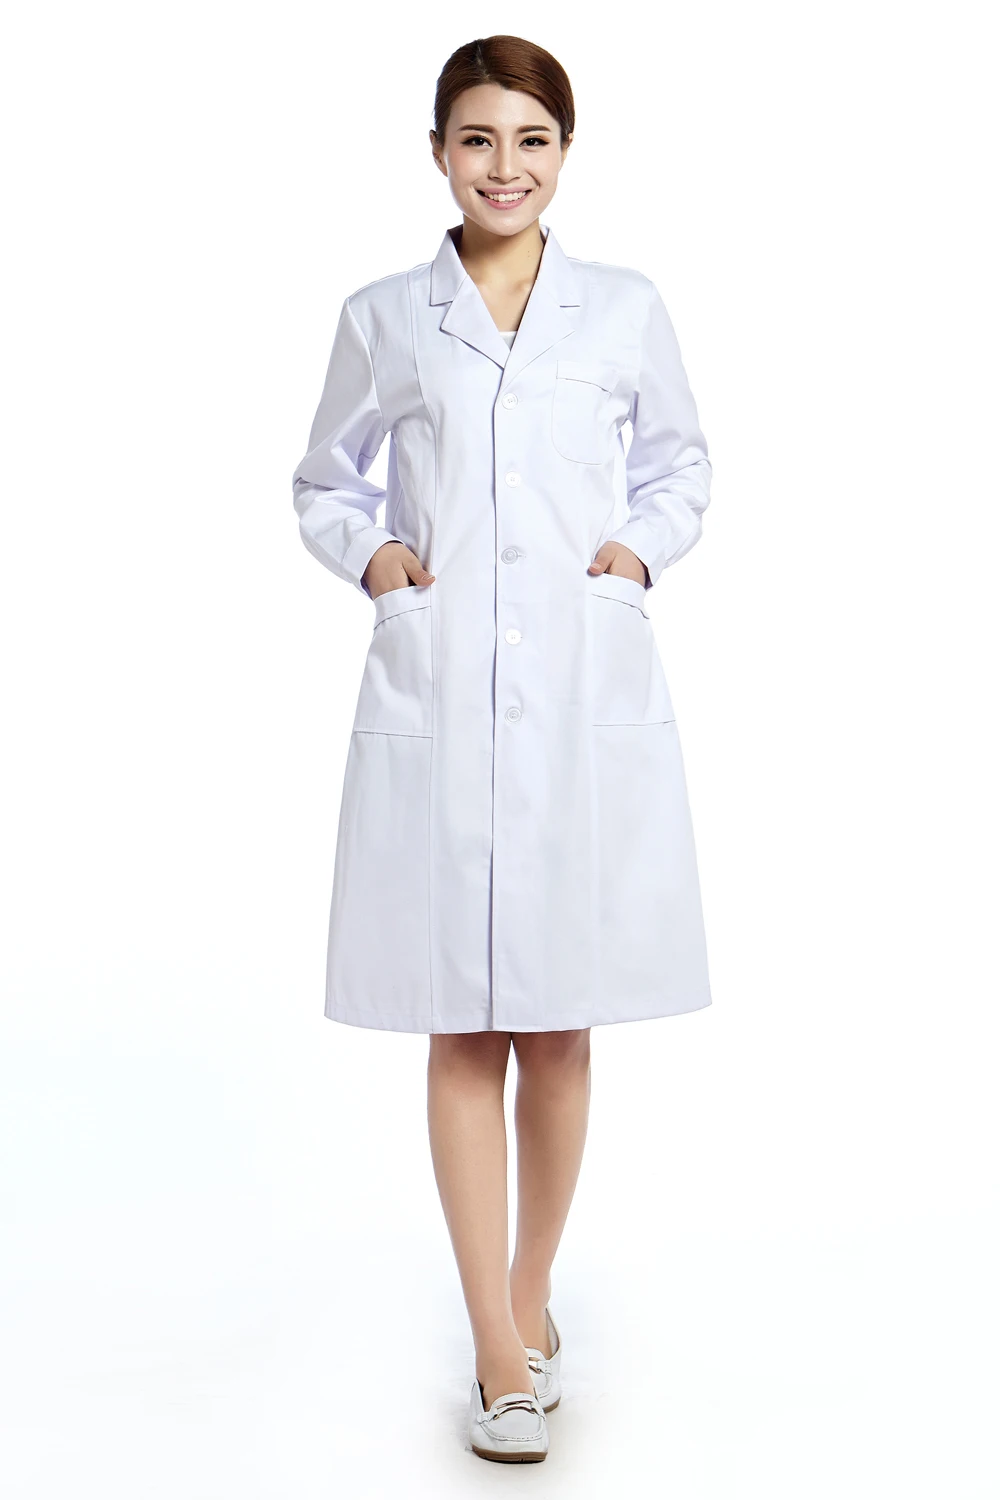 2015 Oem Lab Coat Medical Clothing Hospital Doctor Clothing Nurse